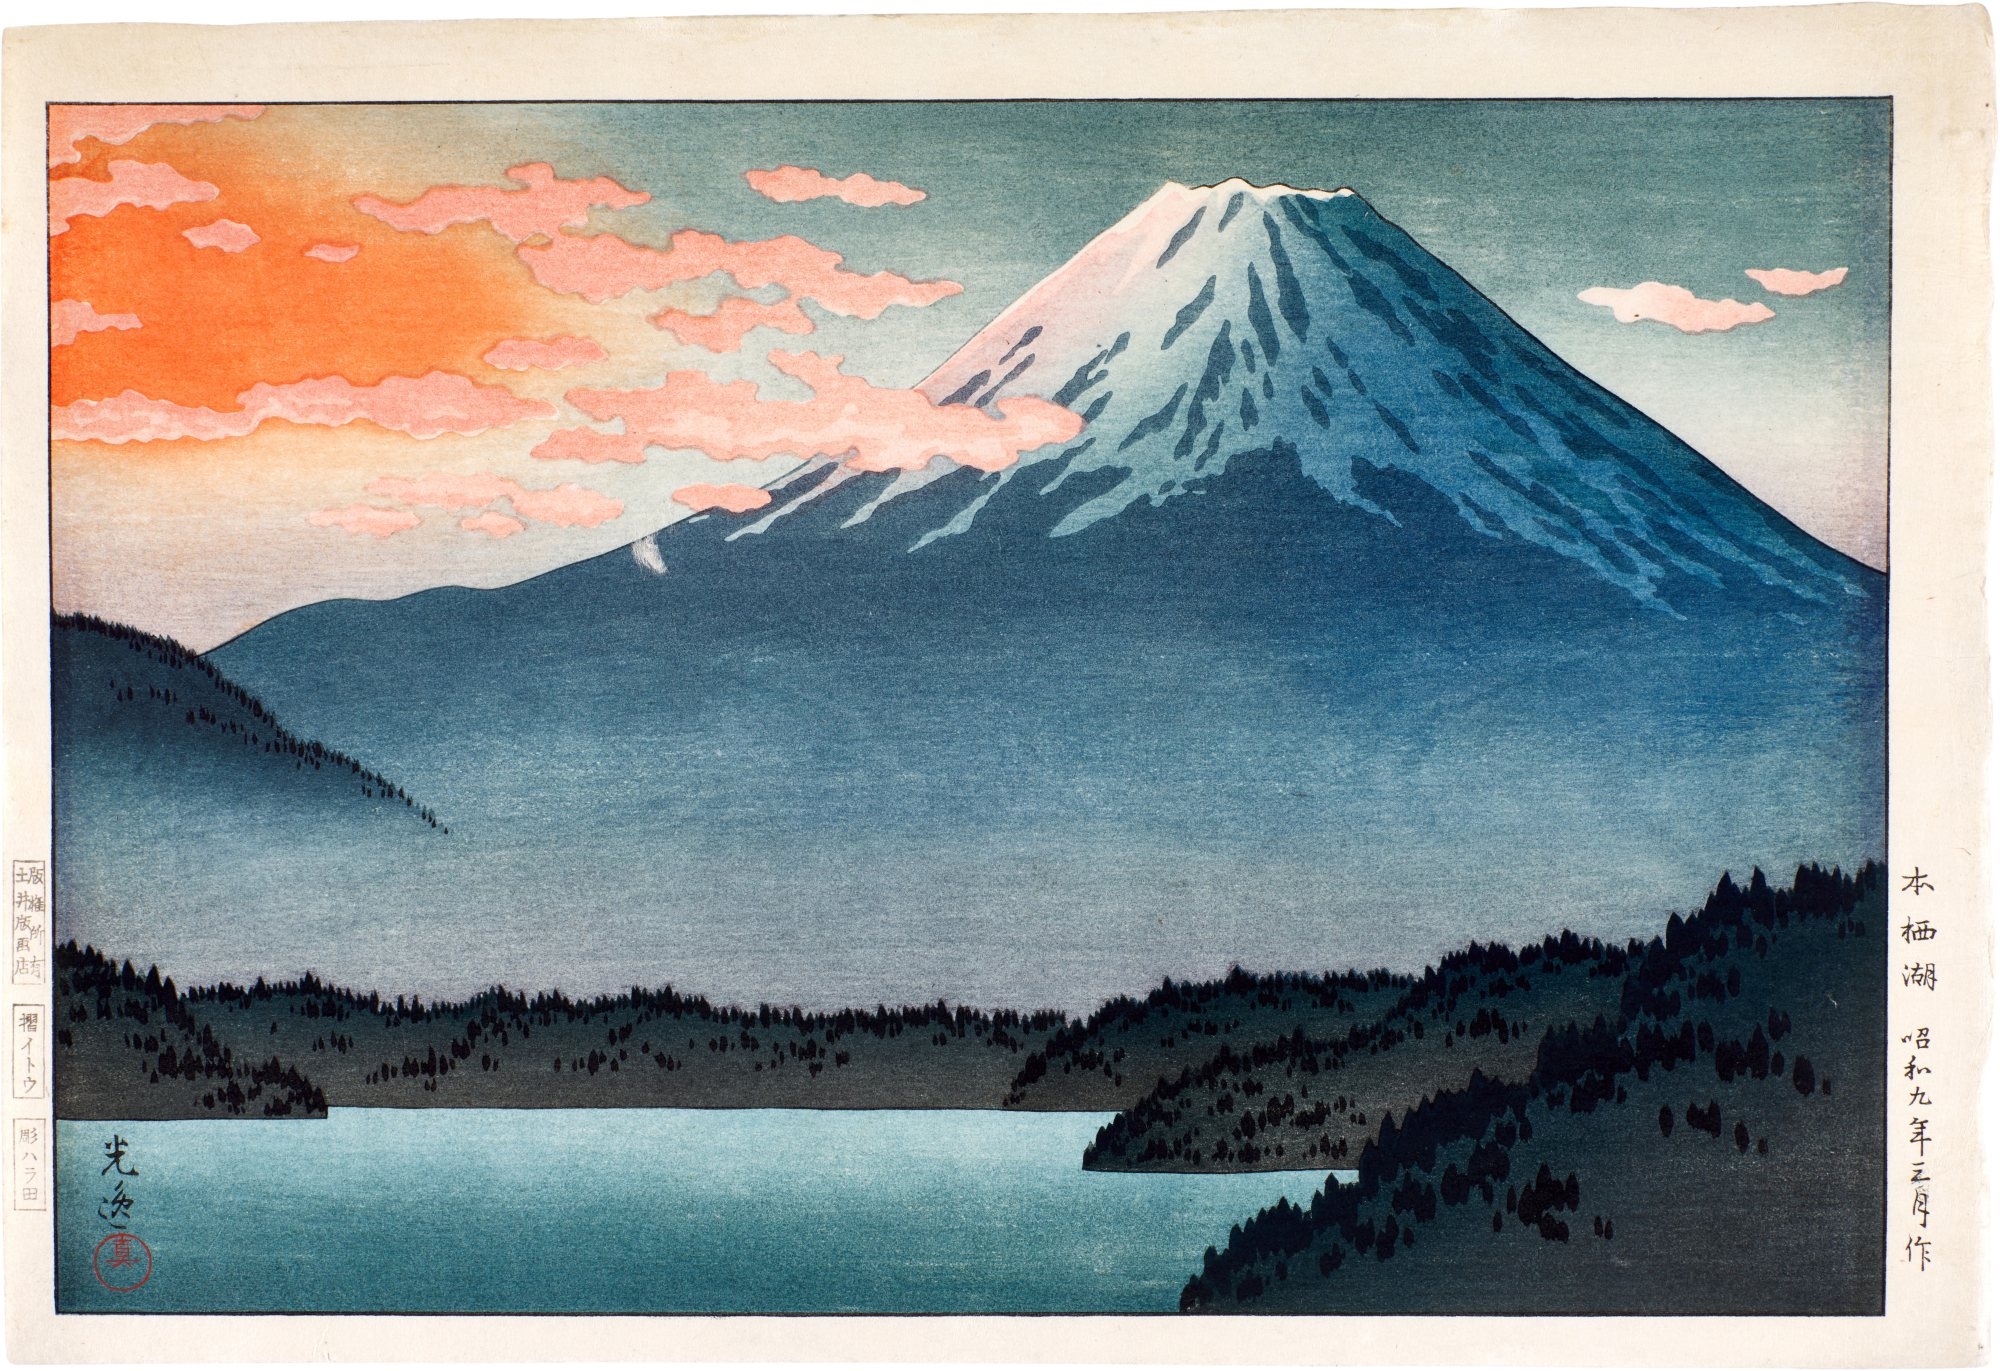 Lake Motosu ( Motosu-ko ) by Tsuchiya Koitsu, 1934